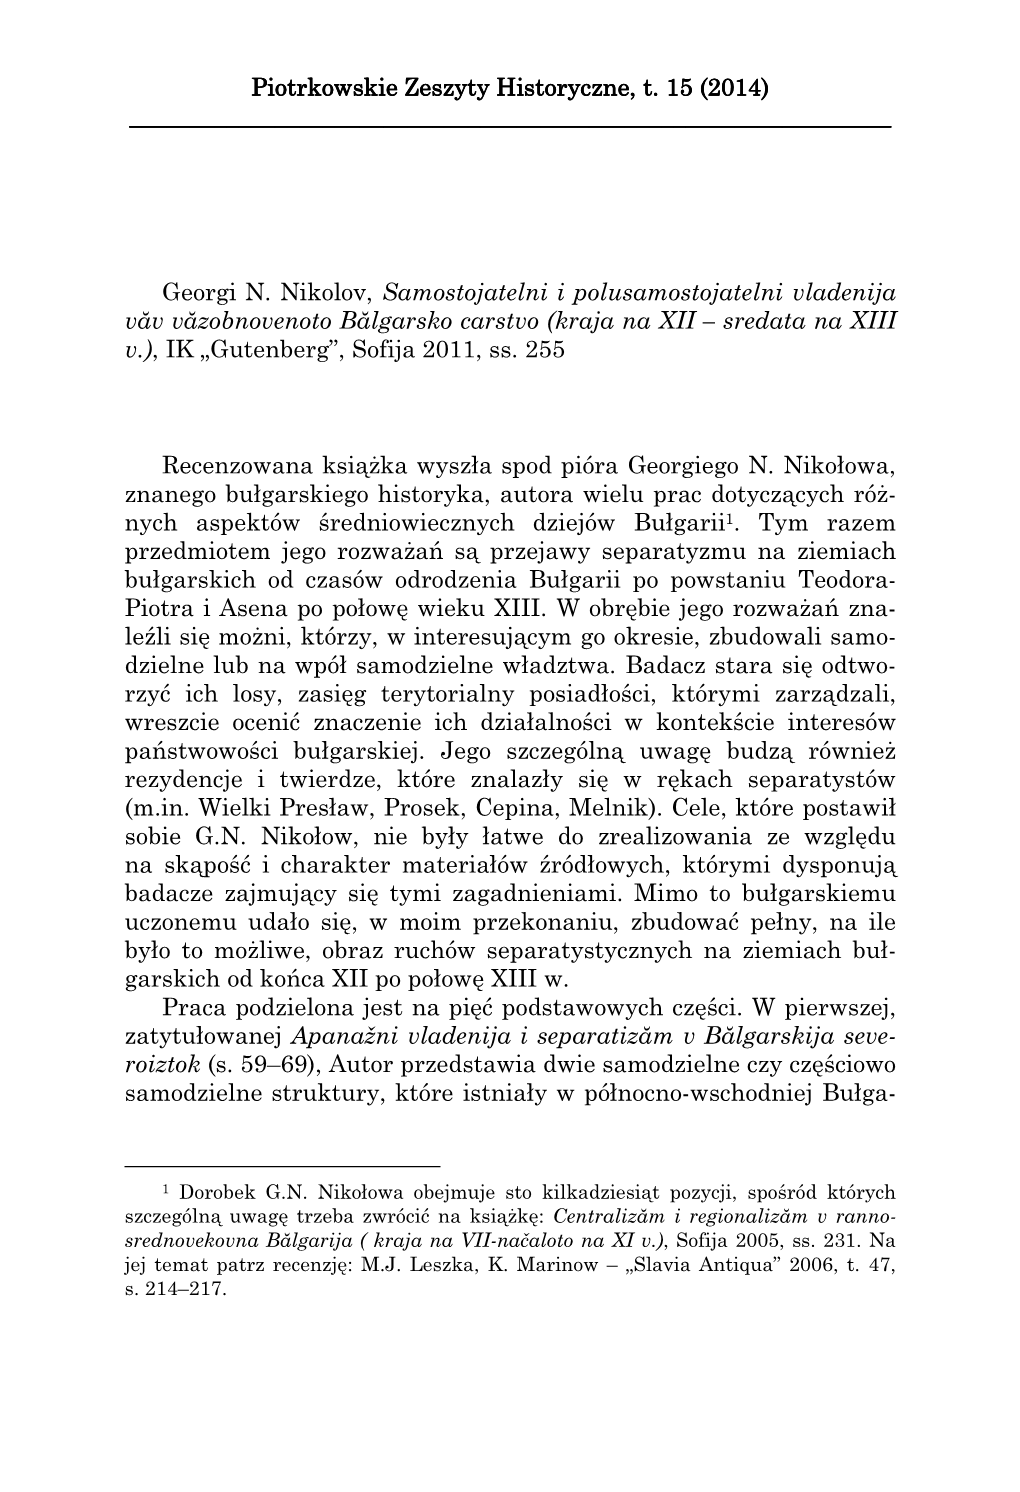 Piotrkowskie Zeszyty Historyczne, T. 15 (2014) ______